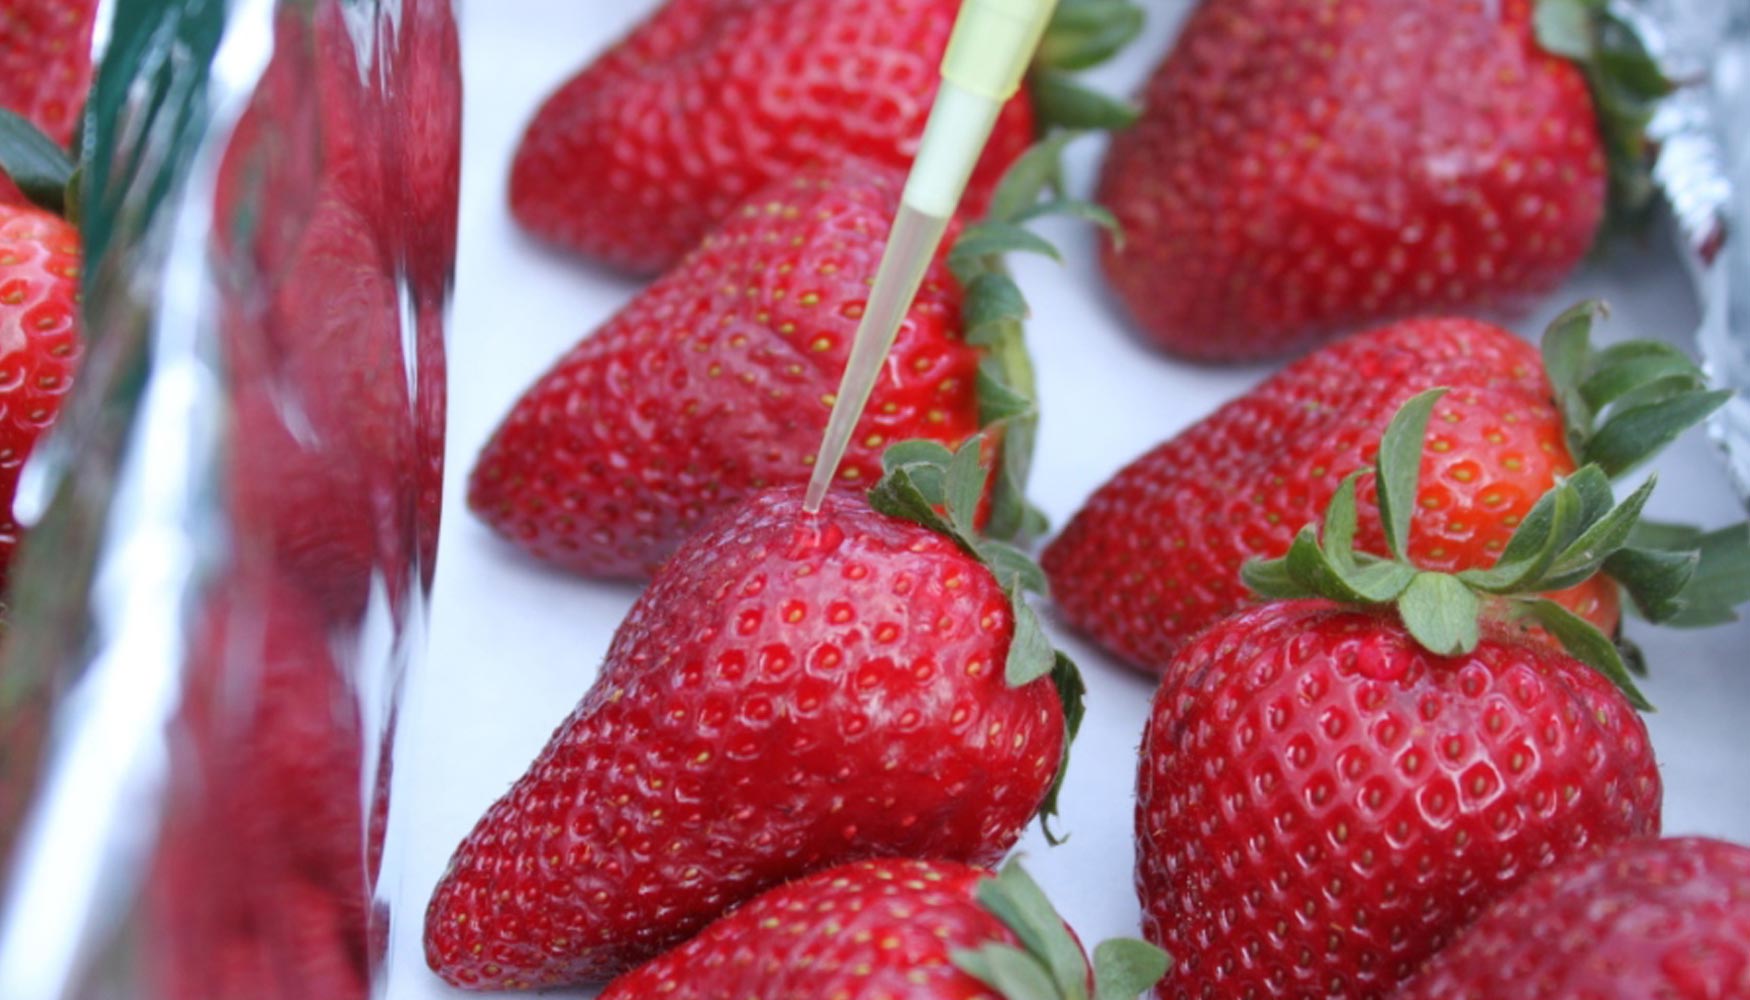 Oxyion alarga ms del 50% la vida comercial de fresas y frutos rojos